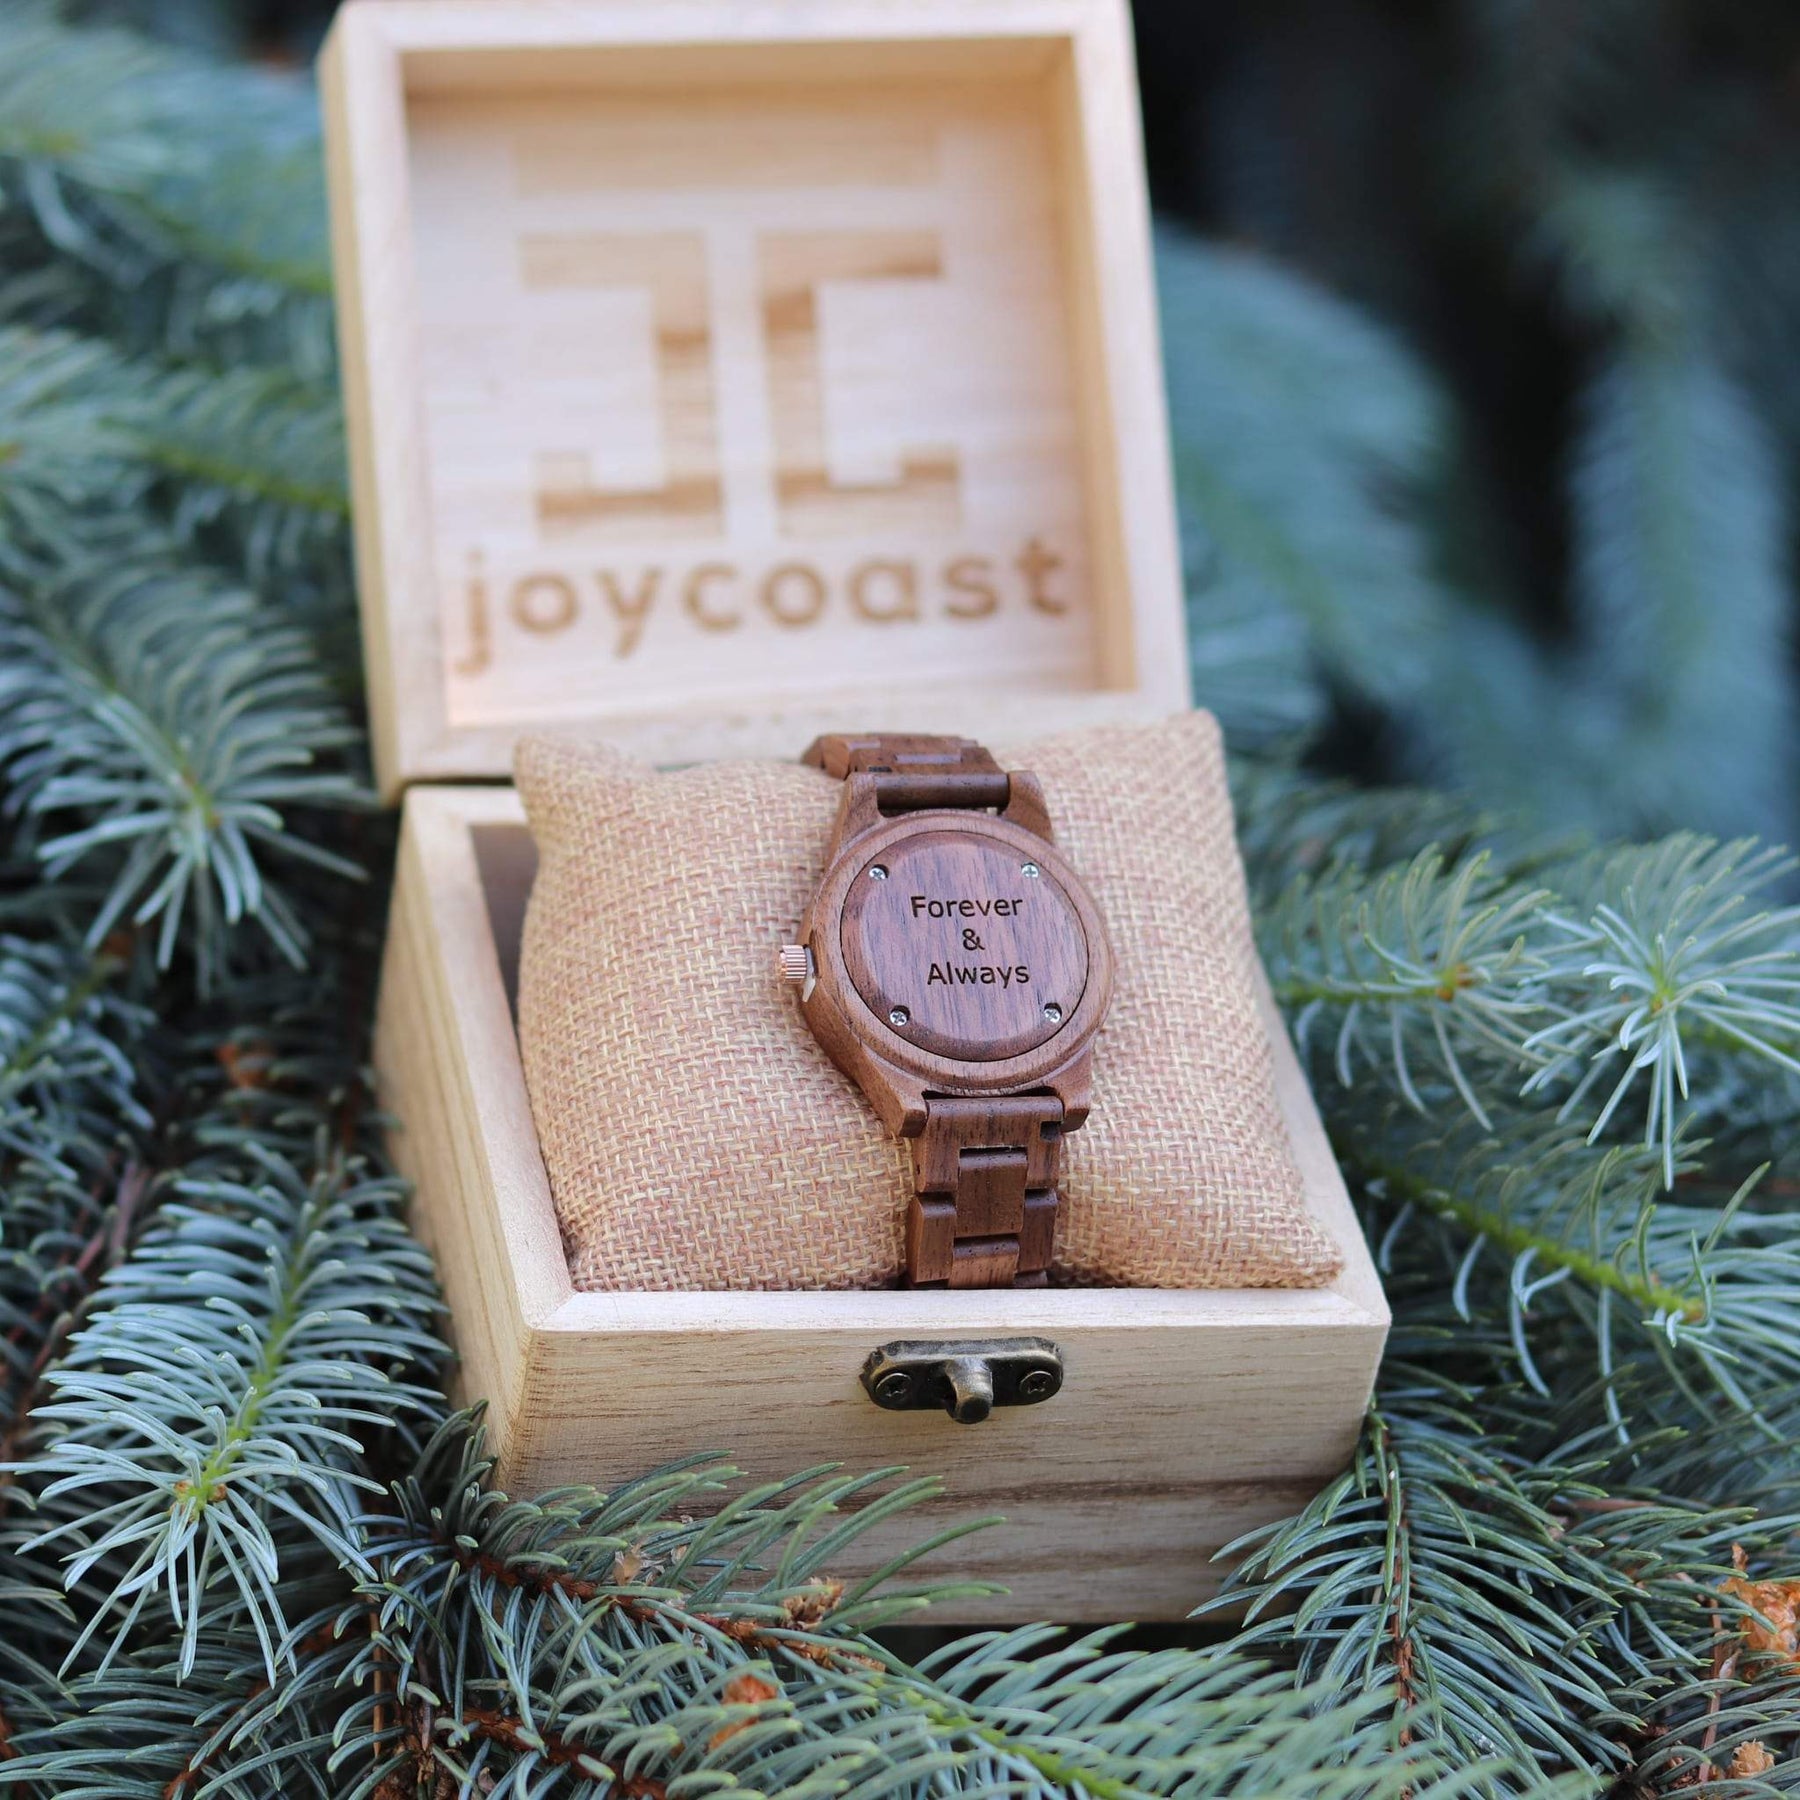 "American Walnut" | Women's Wooden Watch - Joycoast